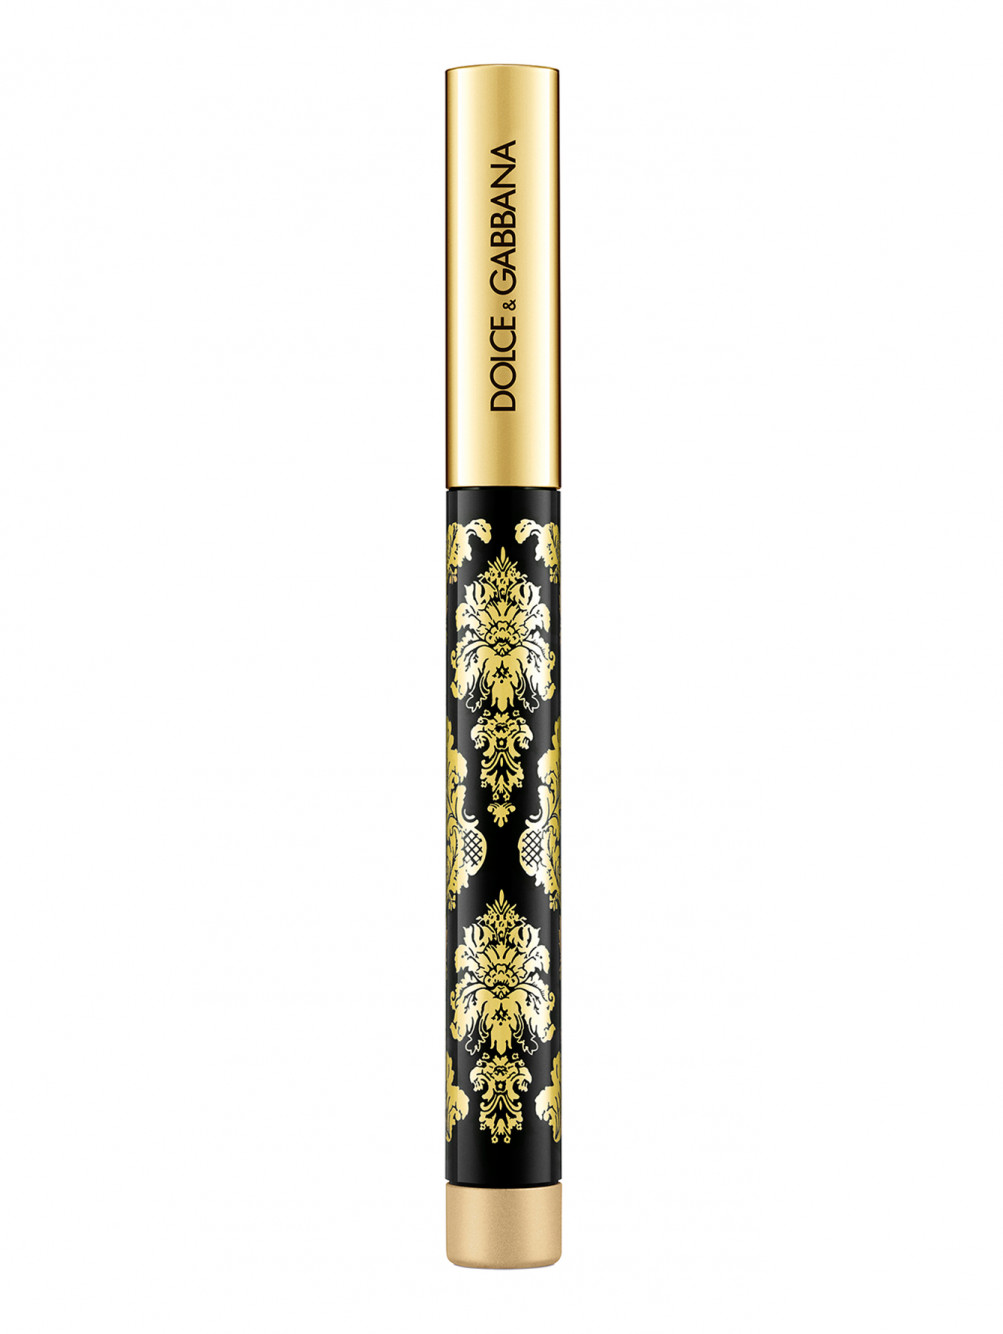 Кремовые тени-карандаш для глаз Intenseyes, 6 Gold, 1,4 мл - Обтравка2